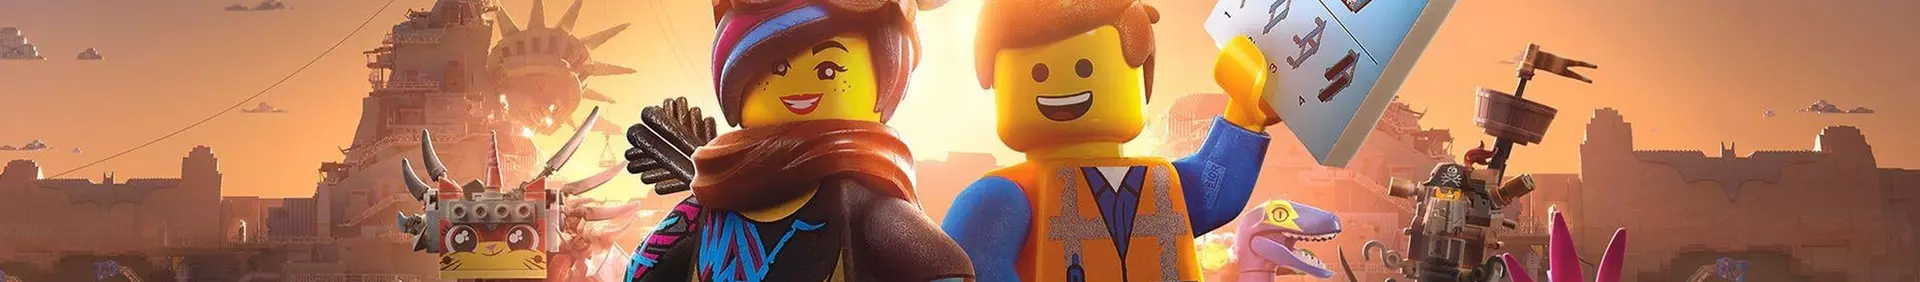 La LEGO Pelicula 2: El Videojuego 